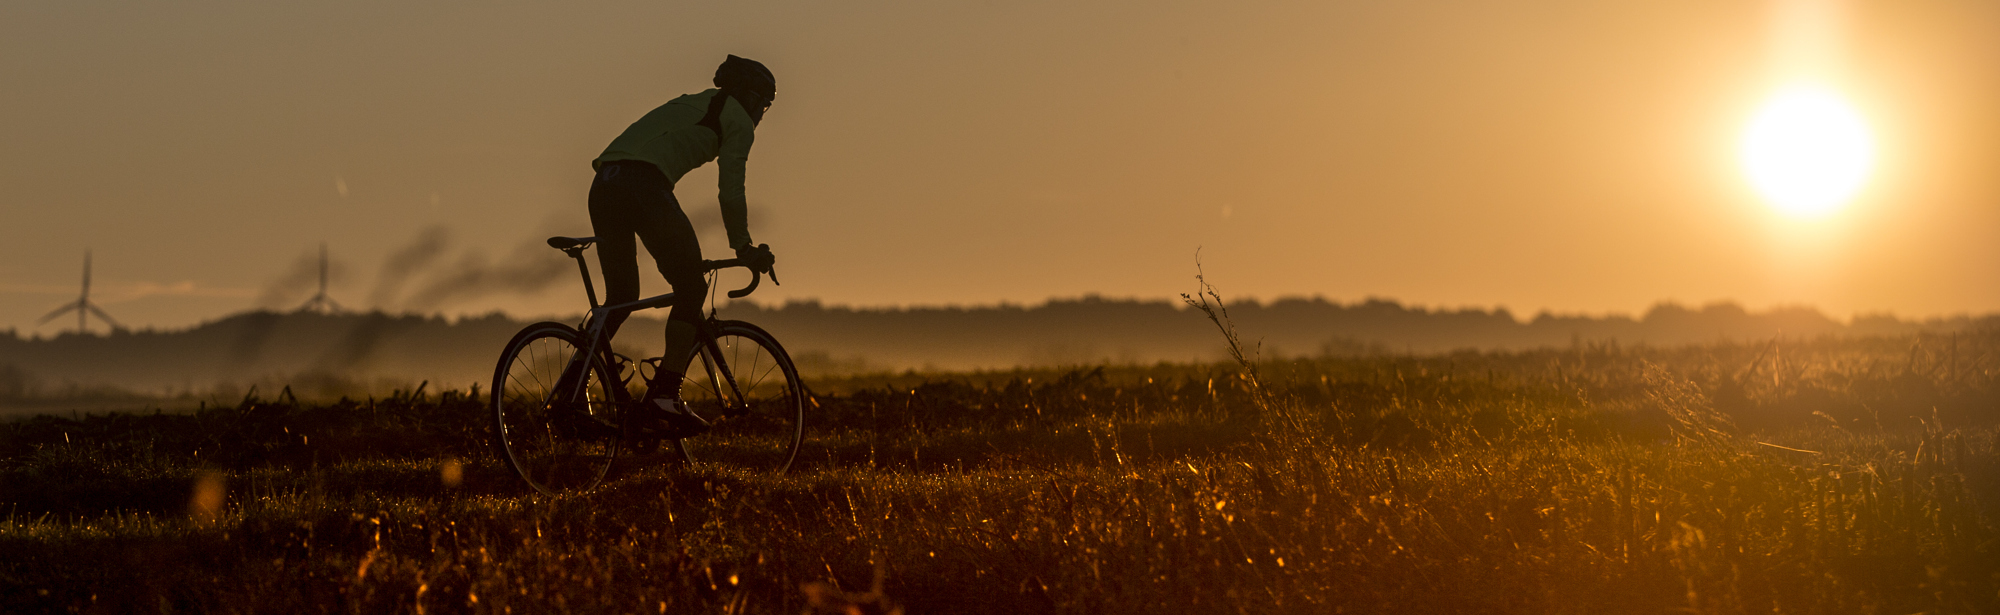 Wielrenner fietst een heuvel op met zonsondergang